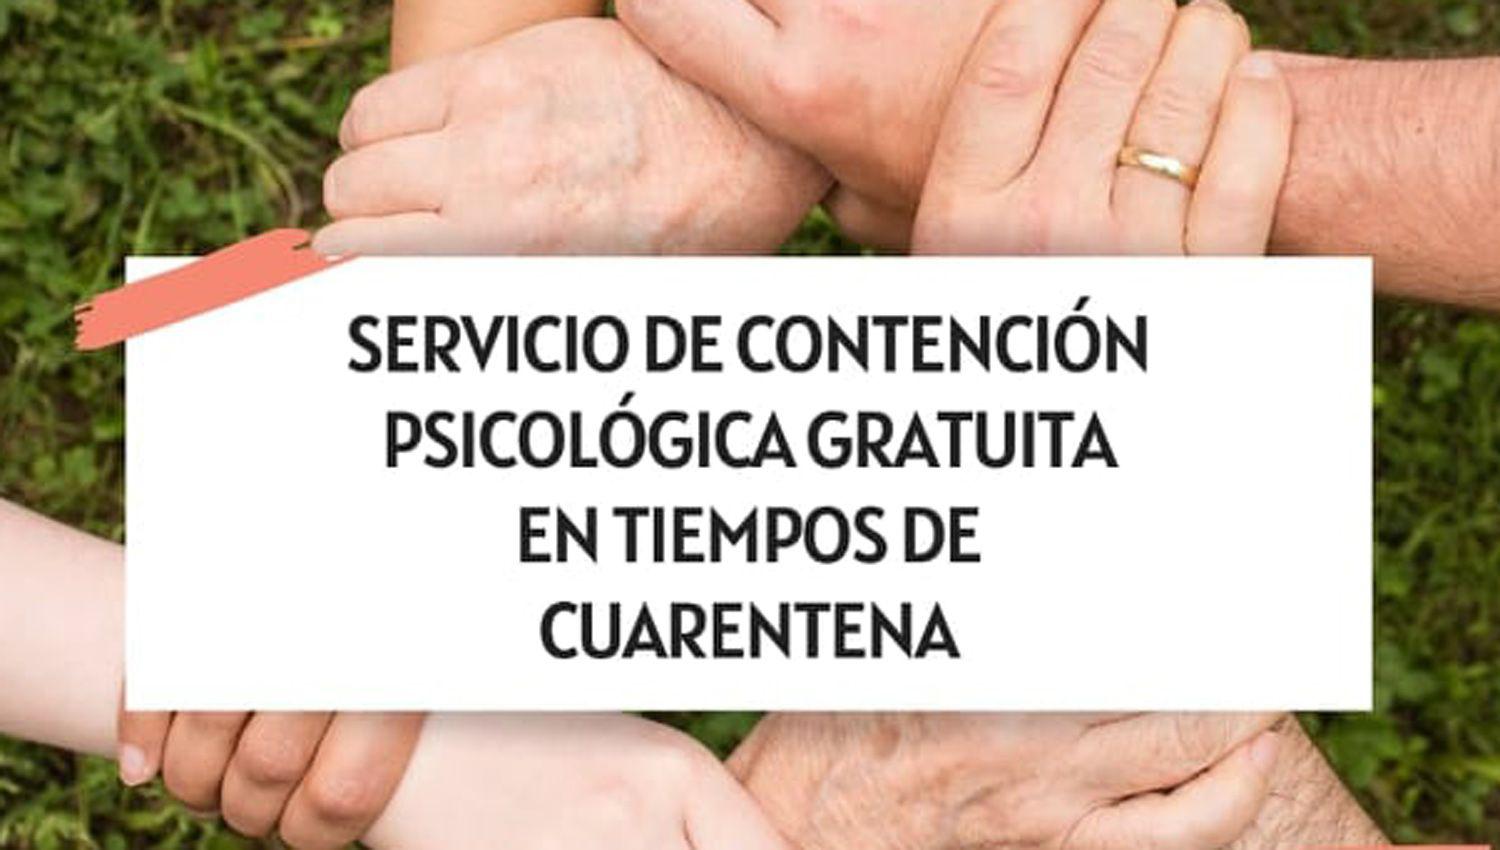 El Colegio de Psicoacutelogos de Santiago del Estero brinda servicio de contencioacuten gratuita